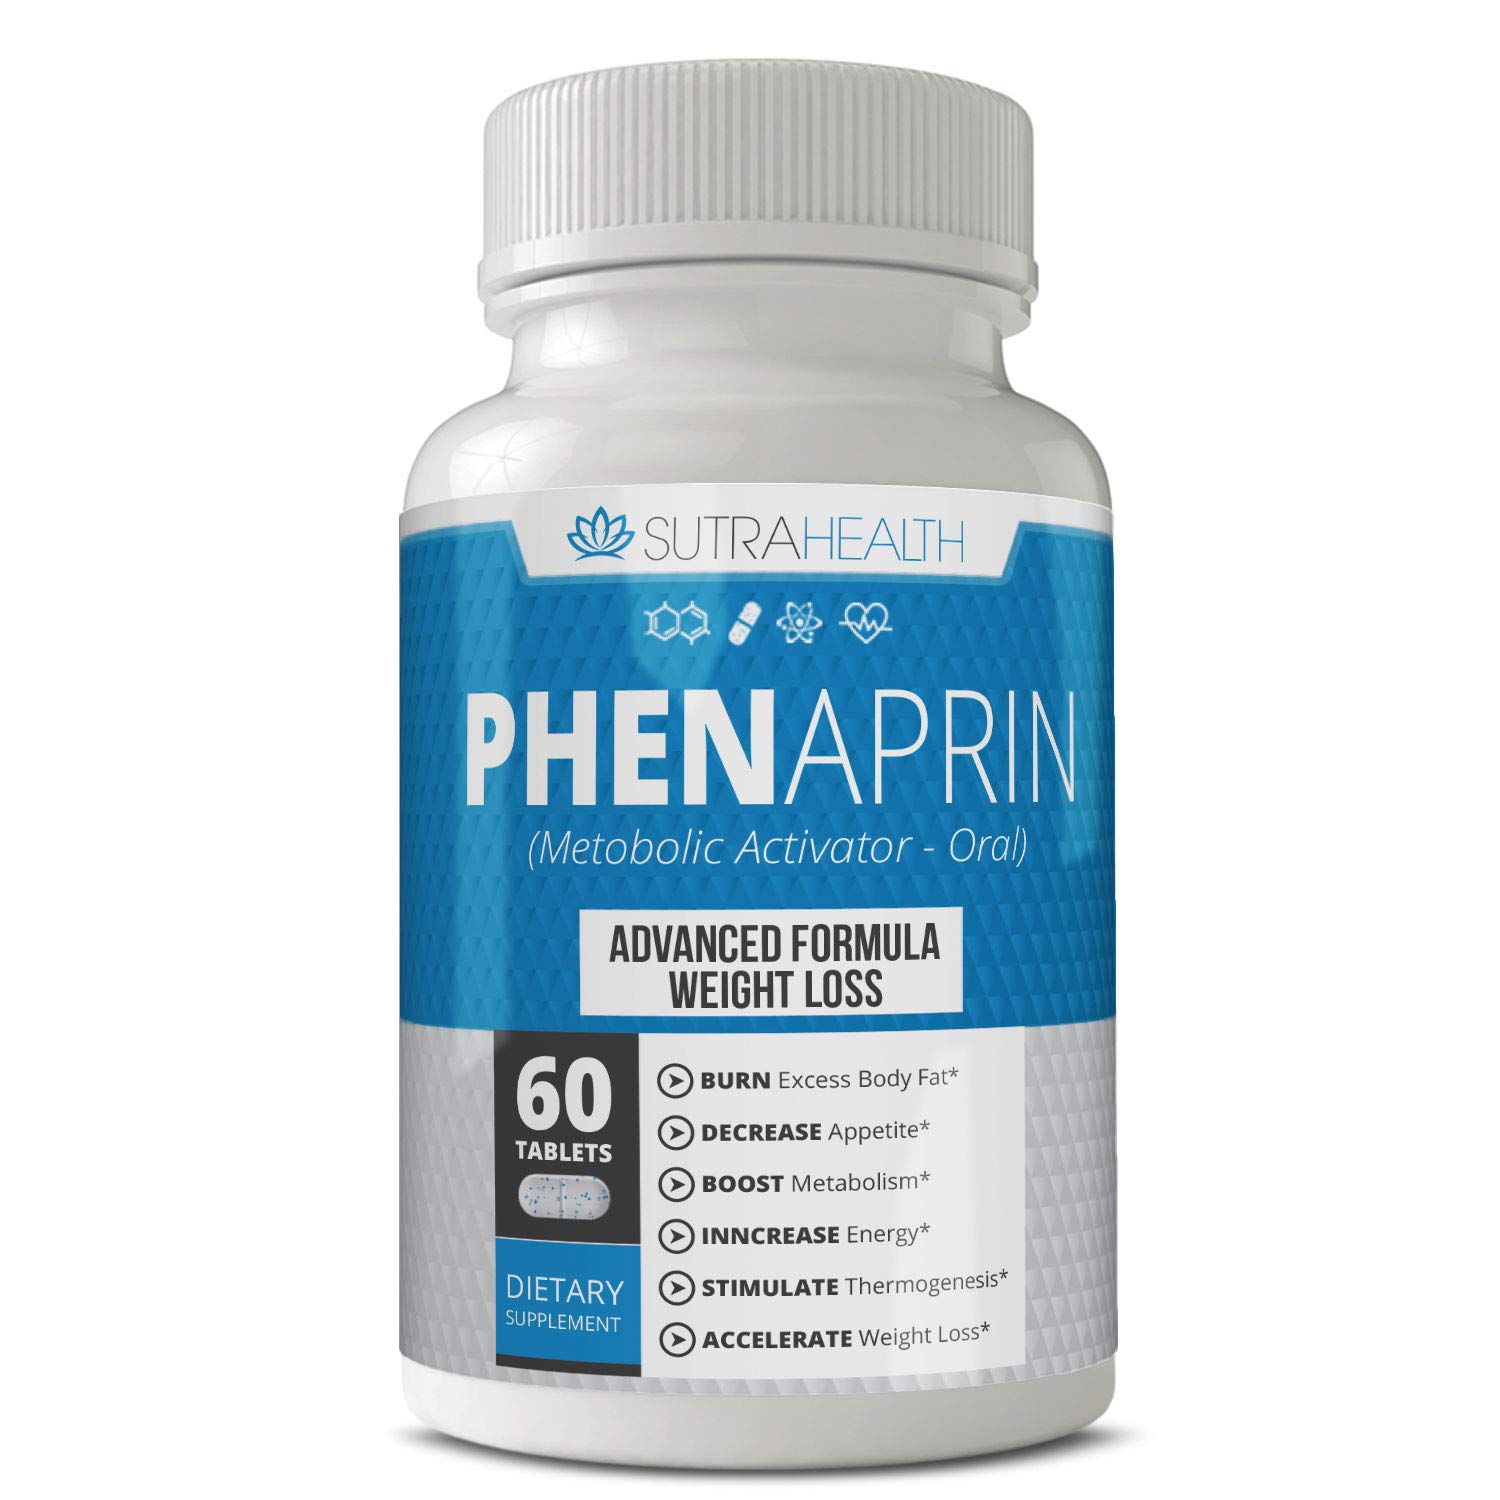 Lipo 6 Black alternative: PhenAprin